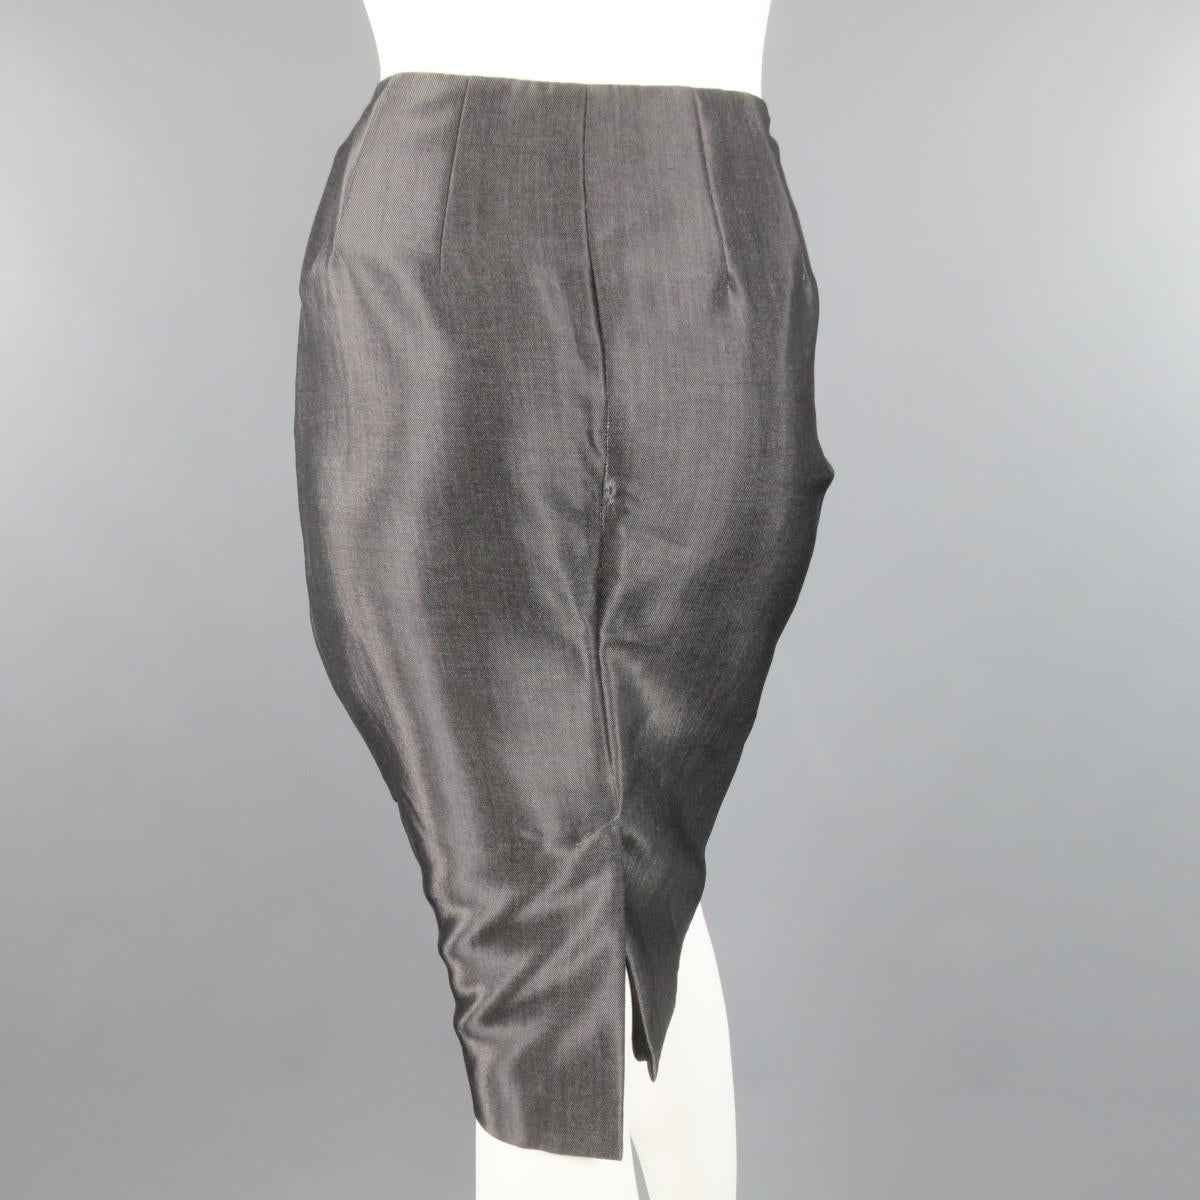 RALPH LAUREN Size 4 Metallic Grey Wool Blend Denim Pencil Skirt